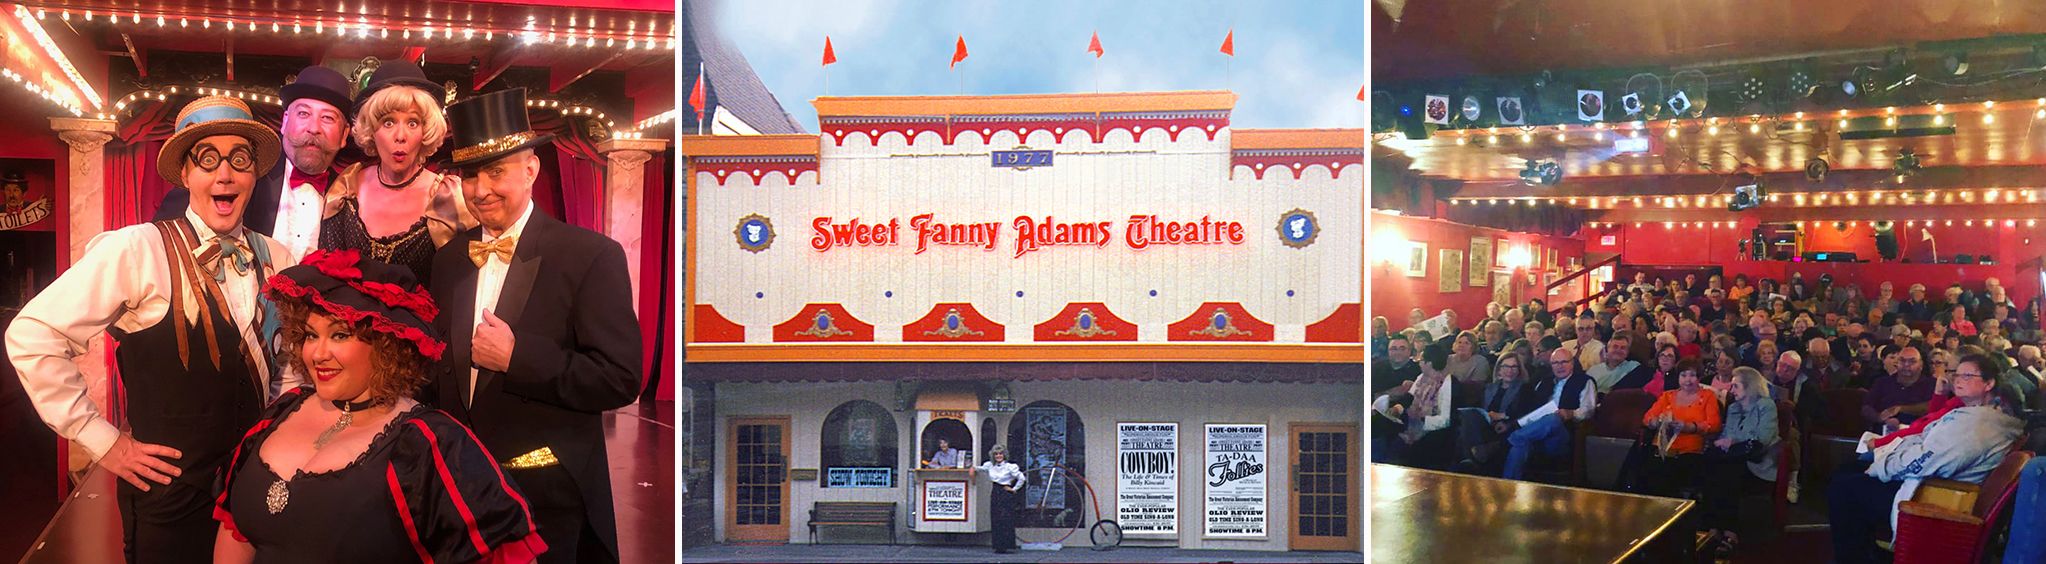 Sweet Fanny Adams Theatre 